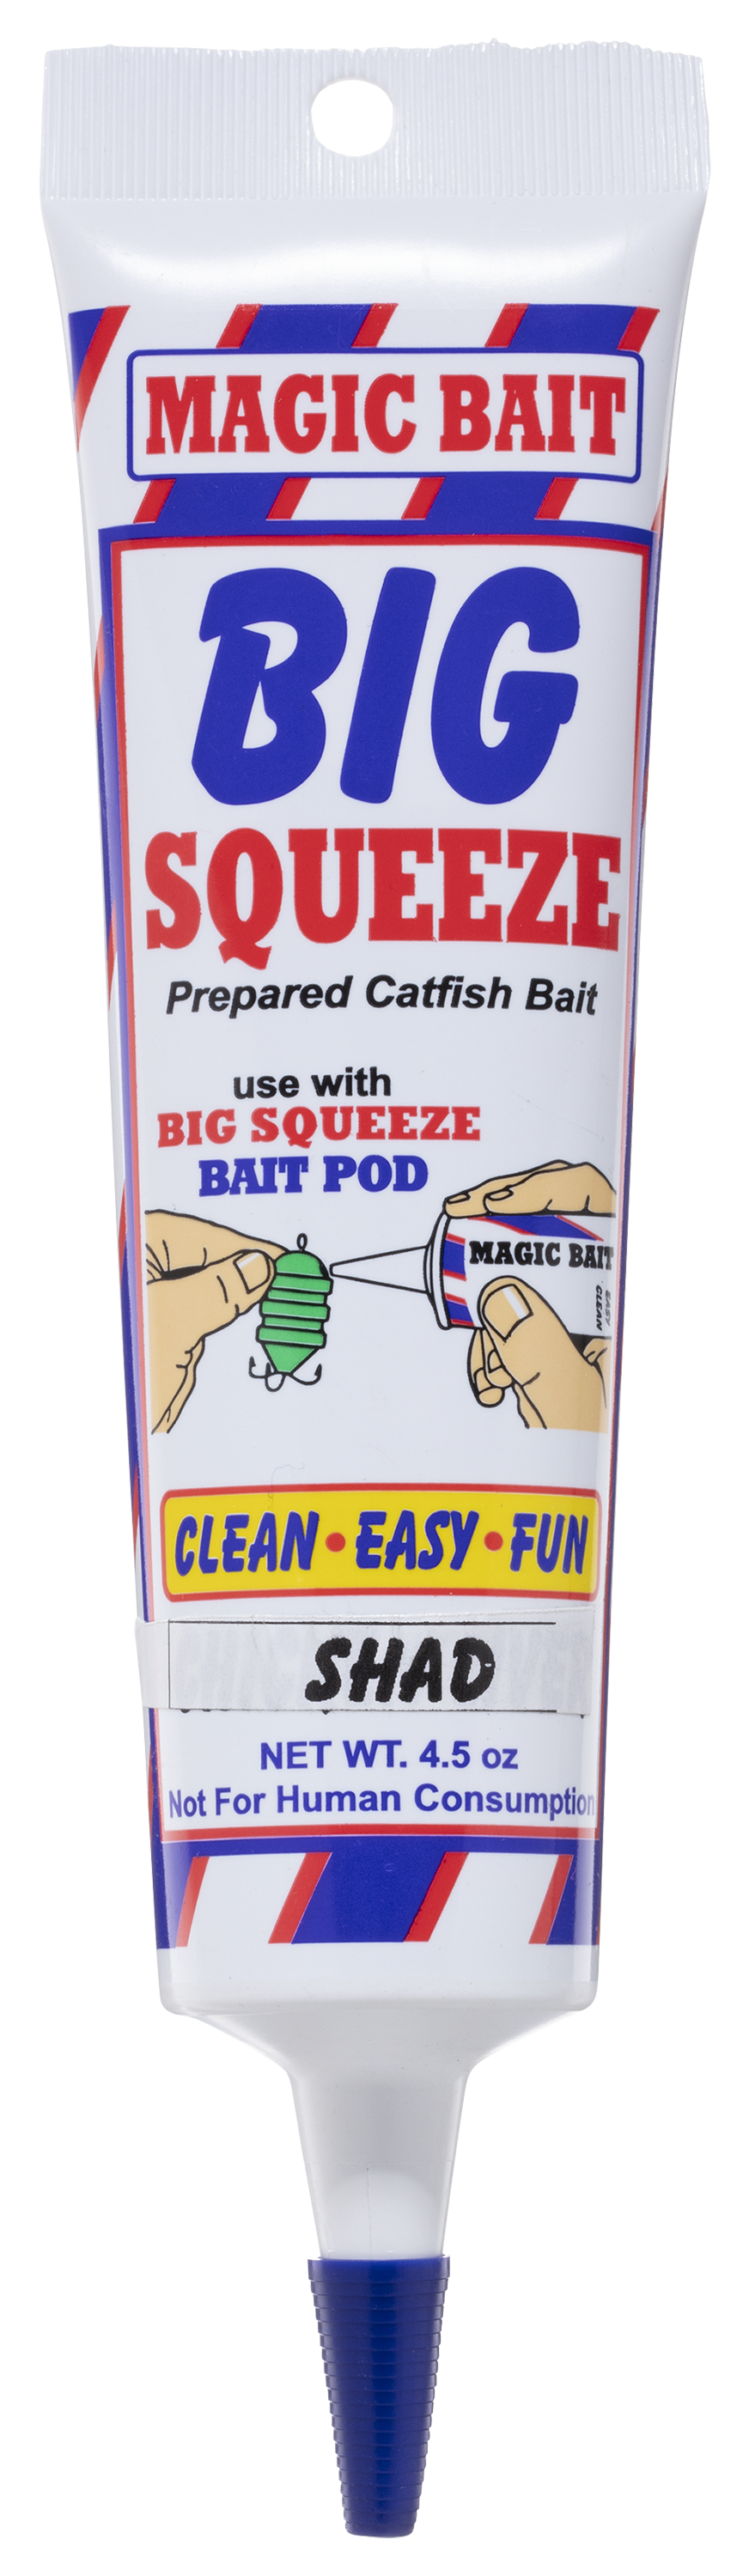 Magic Bait Big Squeeze Catfish Bait